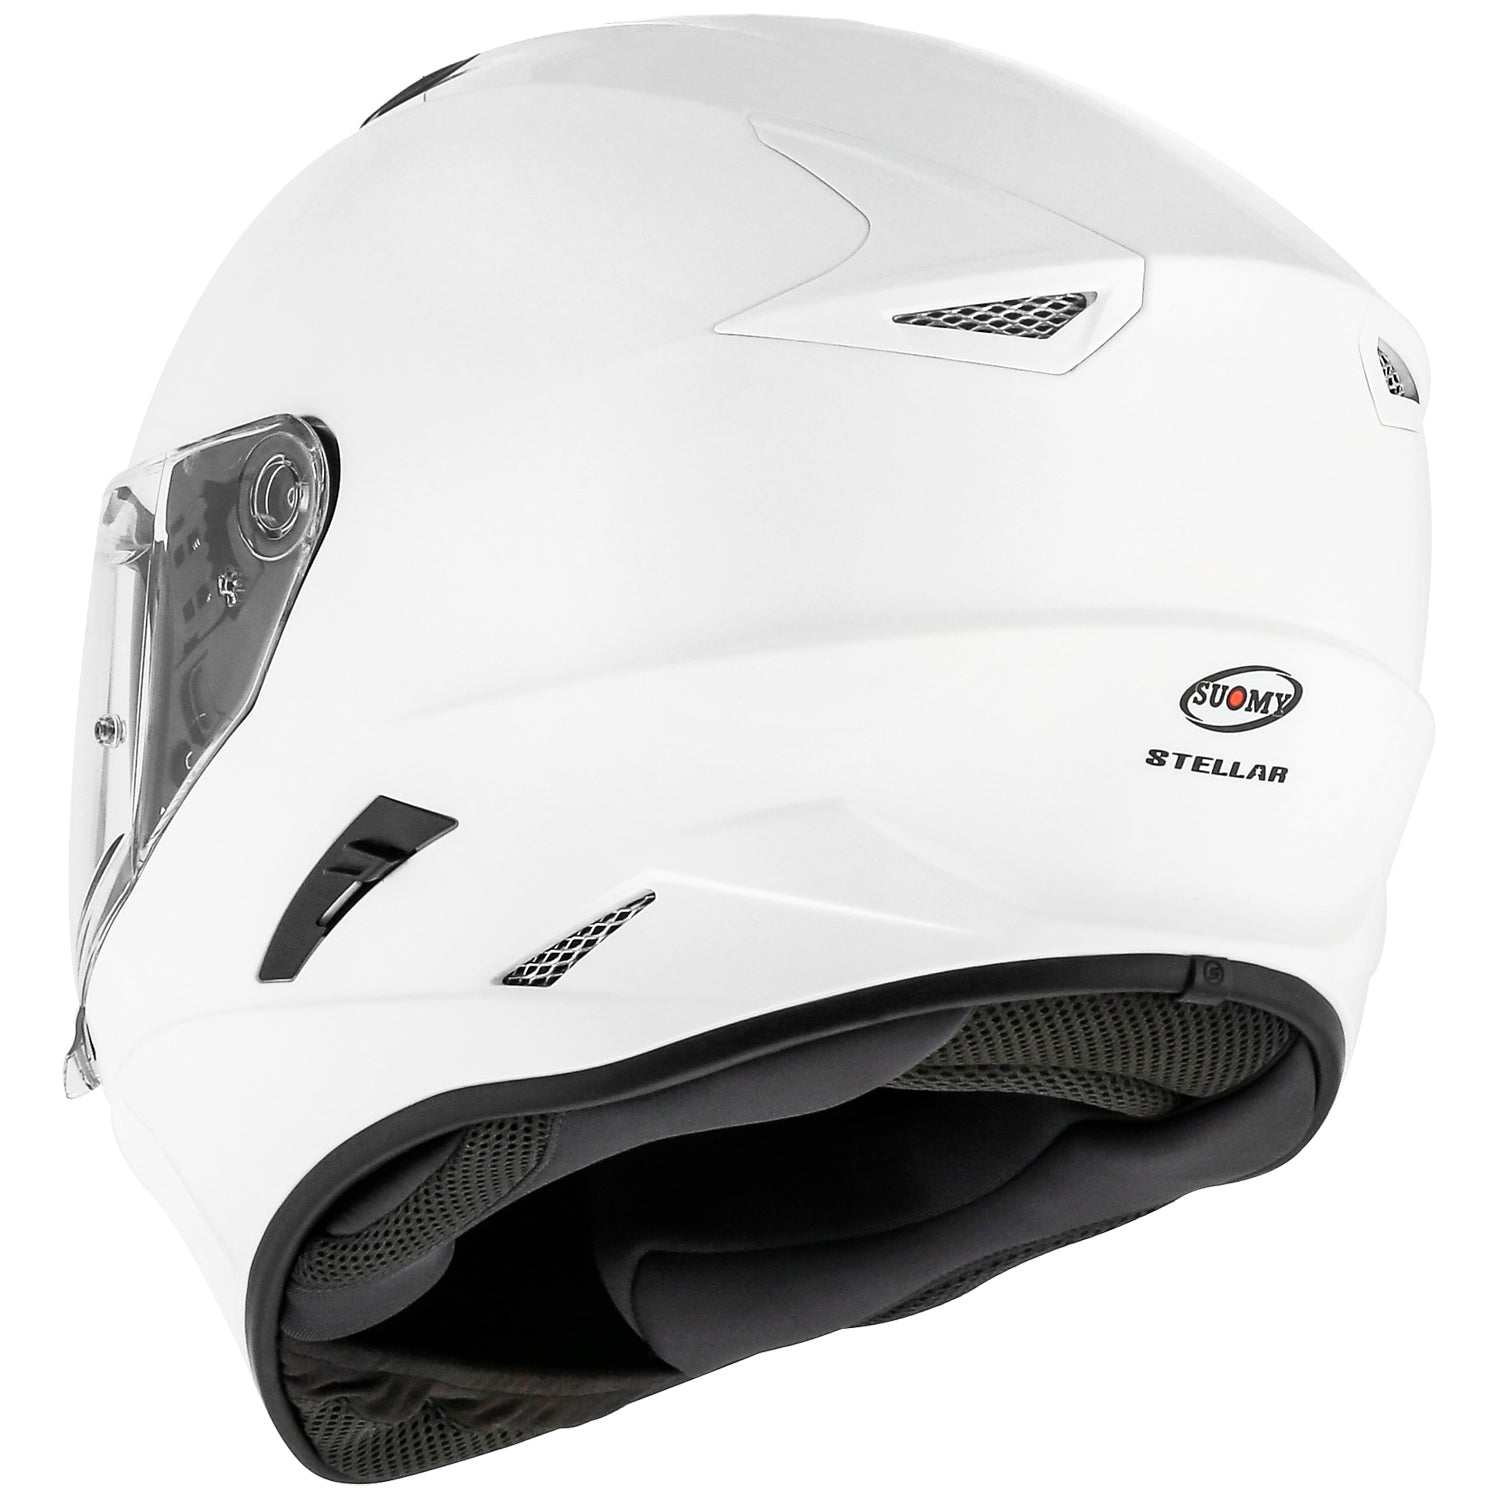 Suomy Stellar Solid White Helmet